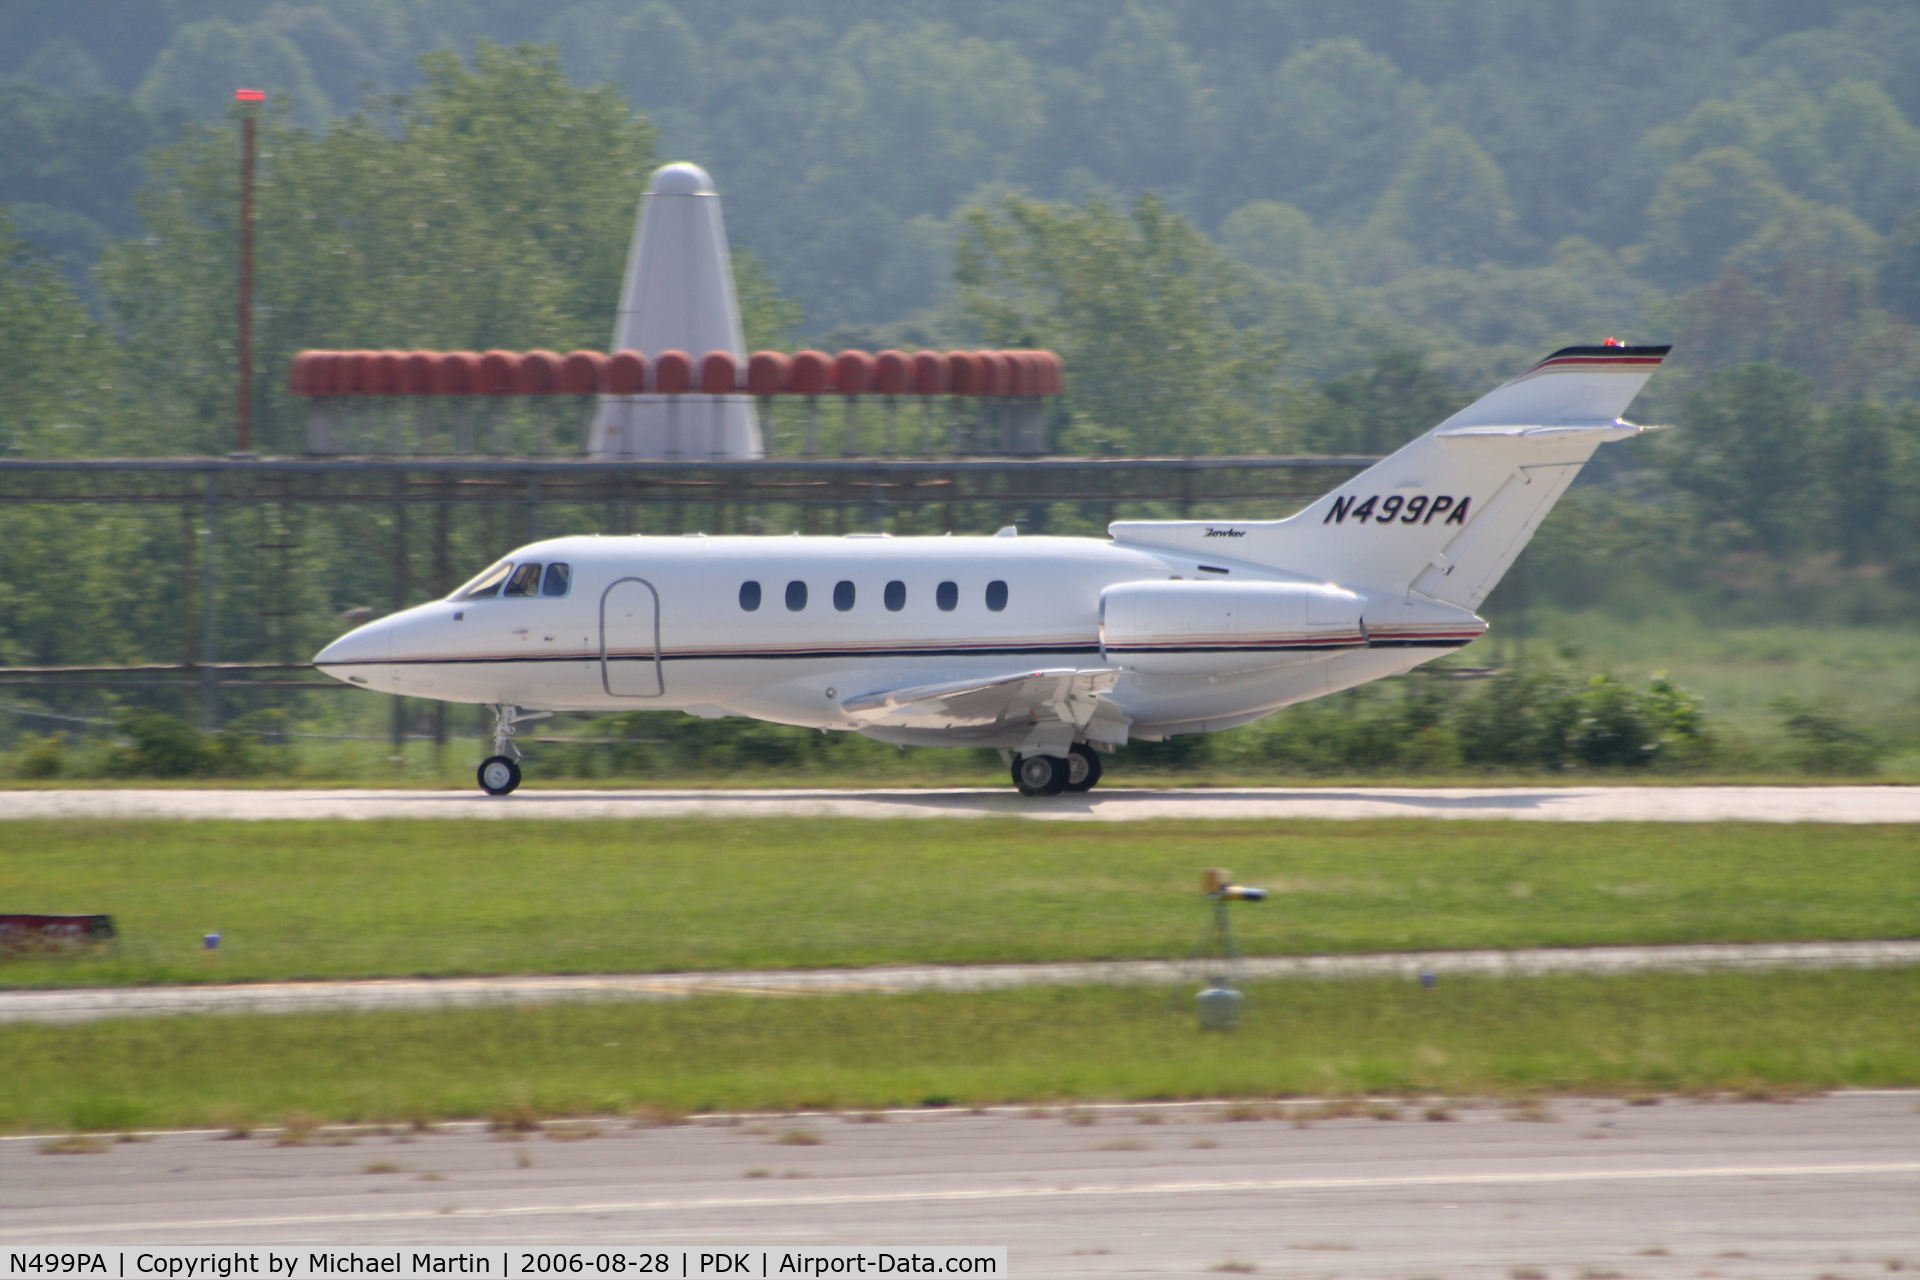 N499PA, 2005 Raytheon Hawker 800XP C/N 258739, Departing Runway 2R